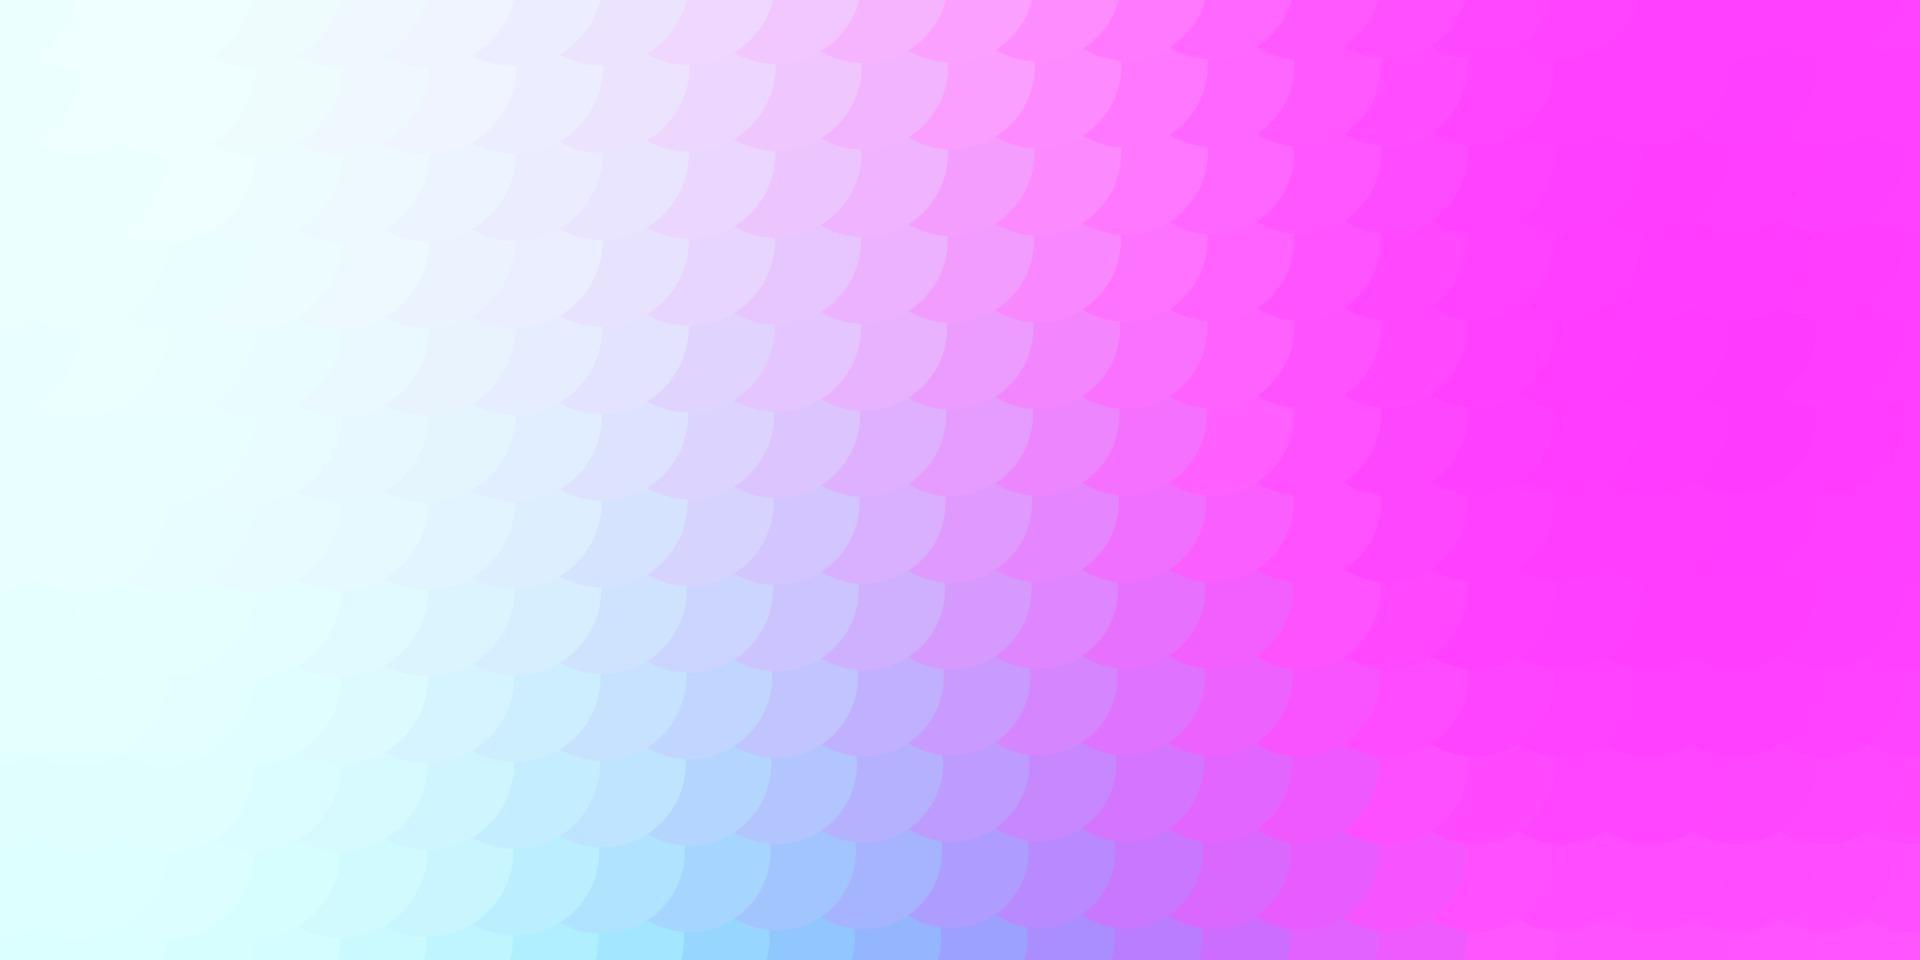 sfondo vettoriale rosa chiaro, blu con punti.